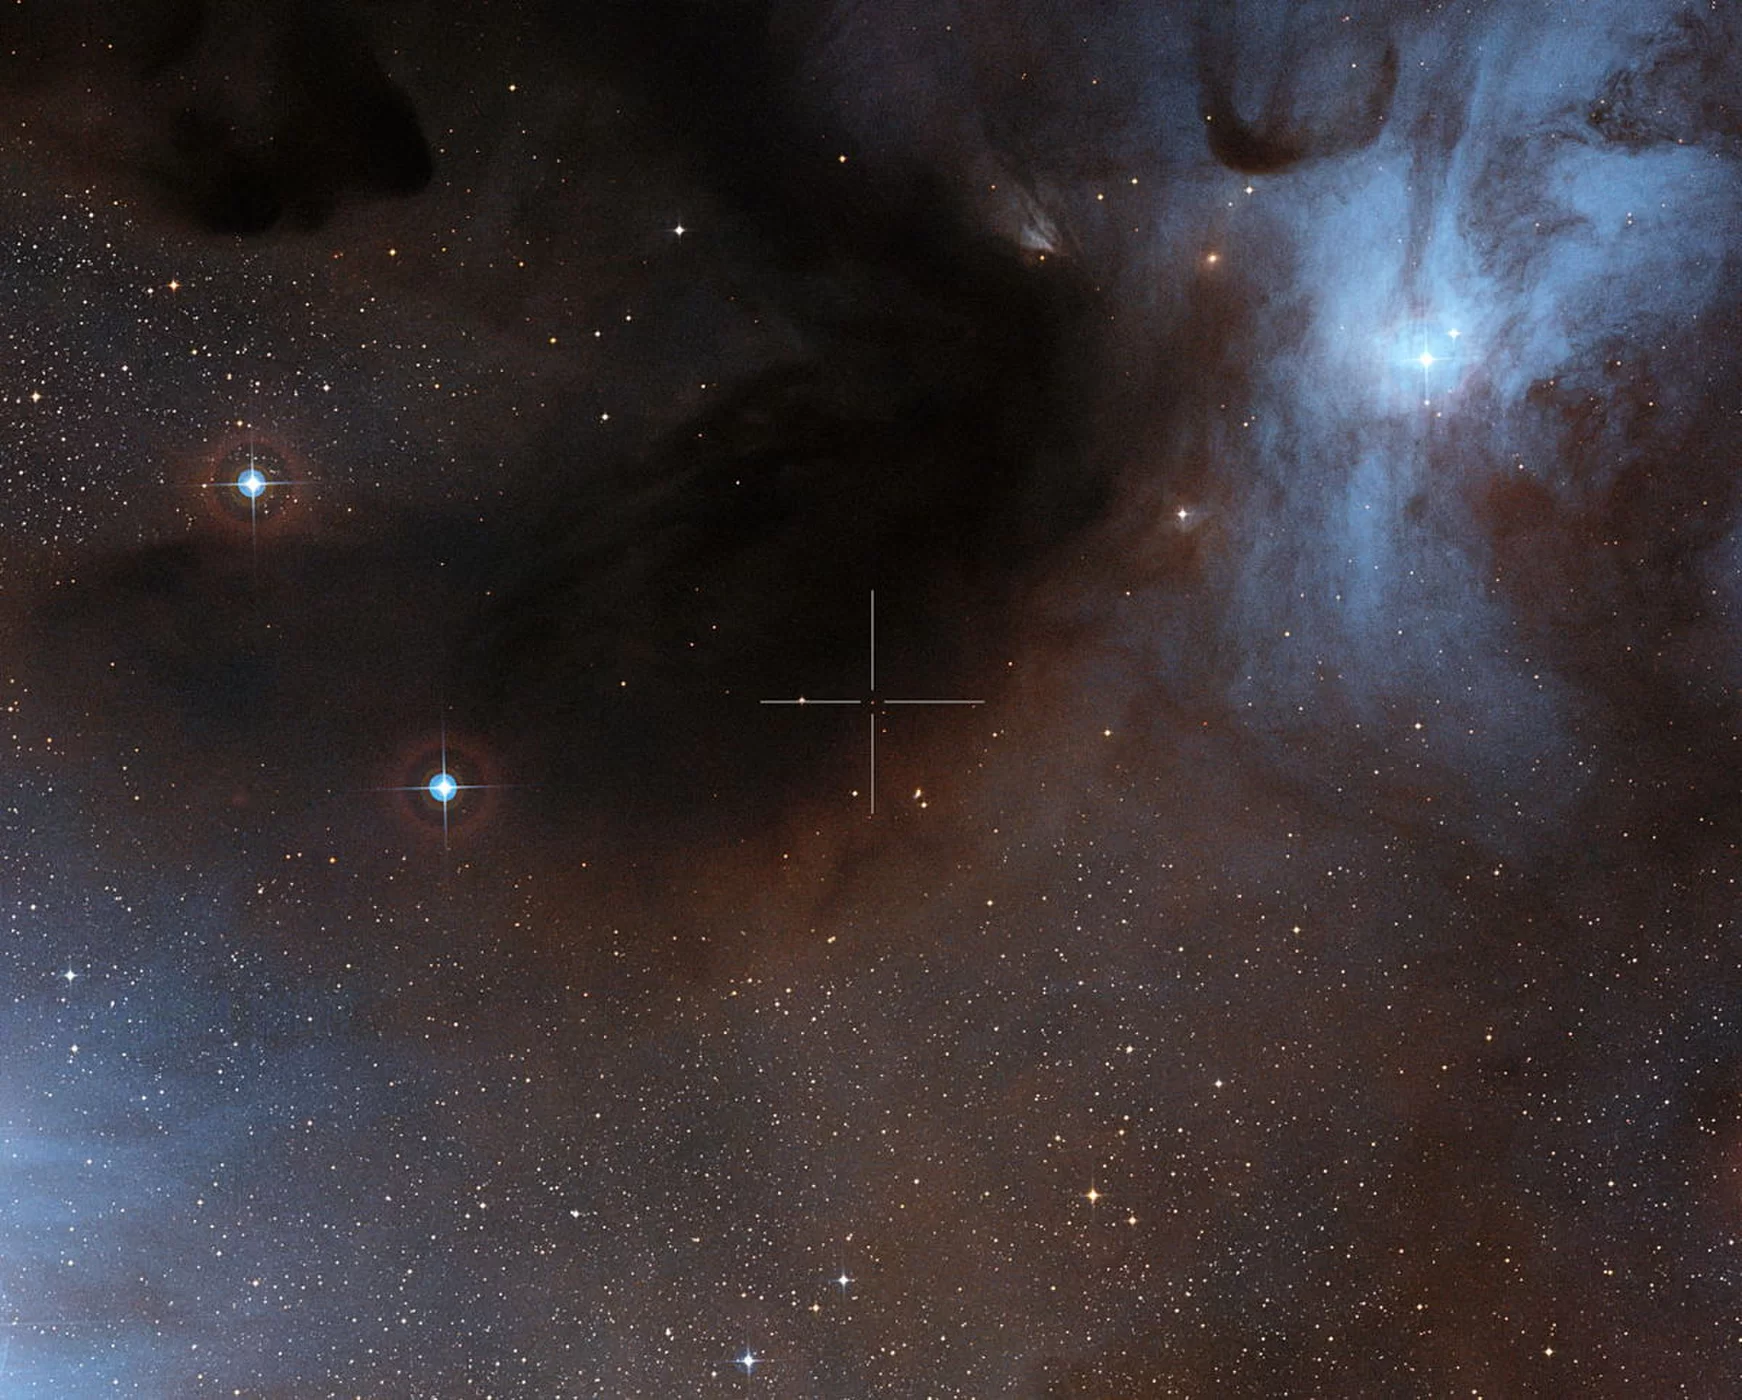 Na tym obrazie widać brązowego karła ISO-Oph 102 lub RHO-Oph 102 w strefie powstawania gwiazd Rho Opiuchi; jego umiejscowienie zostało zaznaczone przy pomocy krzyża. Obraz światła widzialnego powstał ze zdjęć stanowiących część zbioru Digitalized Sky Survey 2. Zdjęcie udostępniono 30.11.2012.